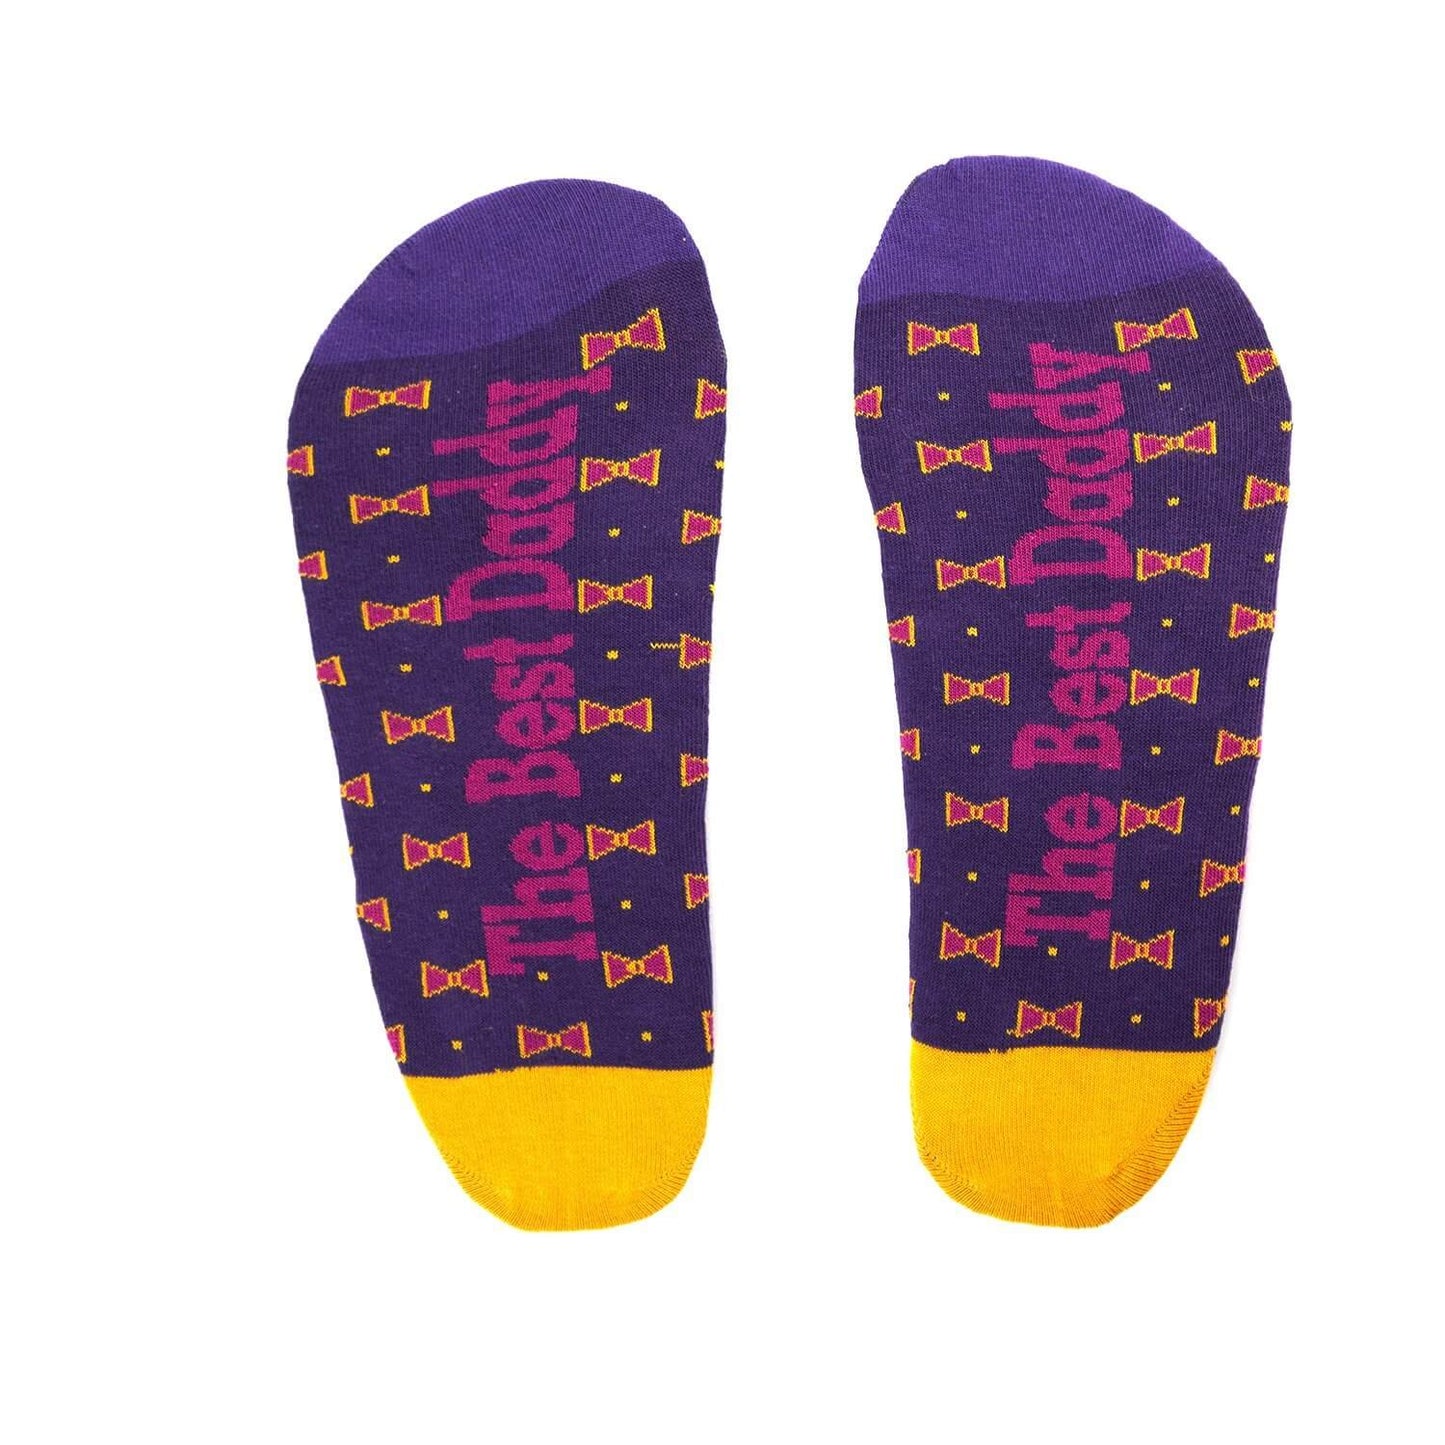 The best Daddy purple socks